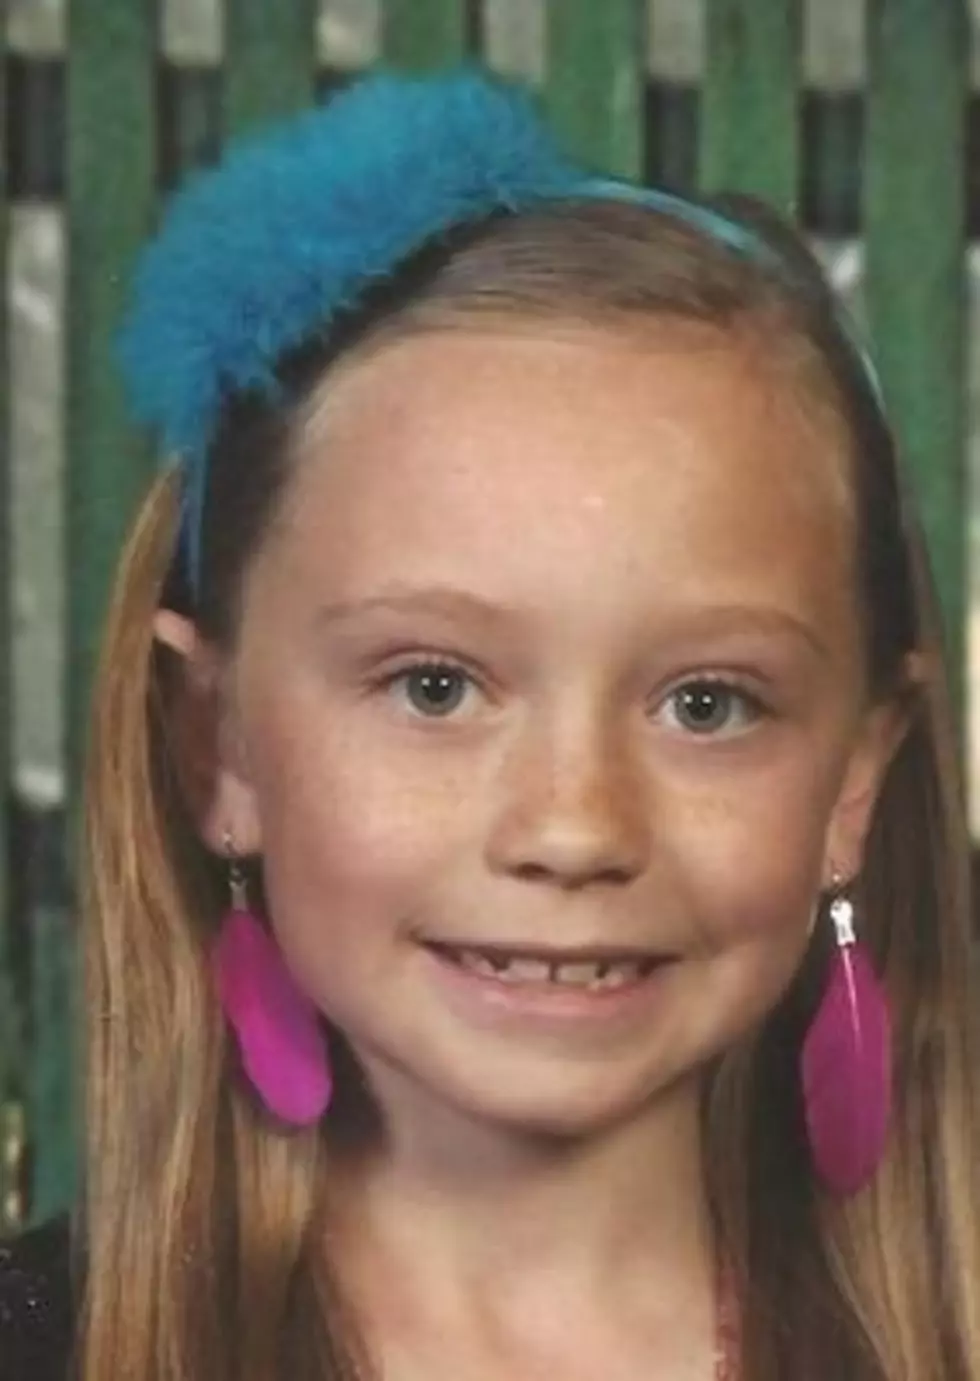 Utah Girl Dies in Freak Trampoline Accident